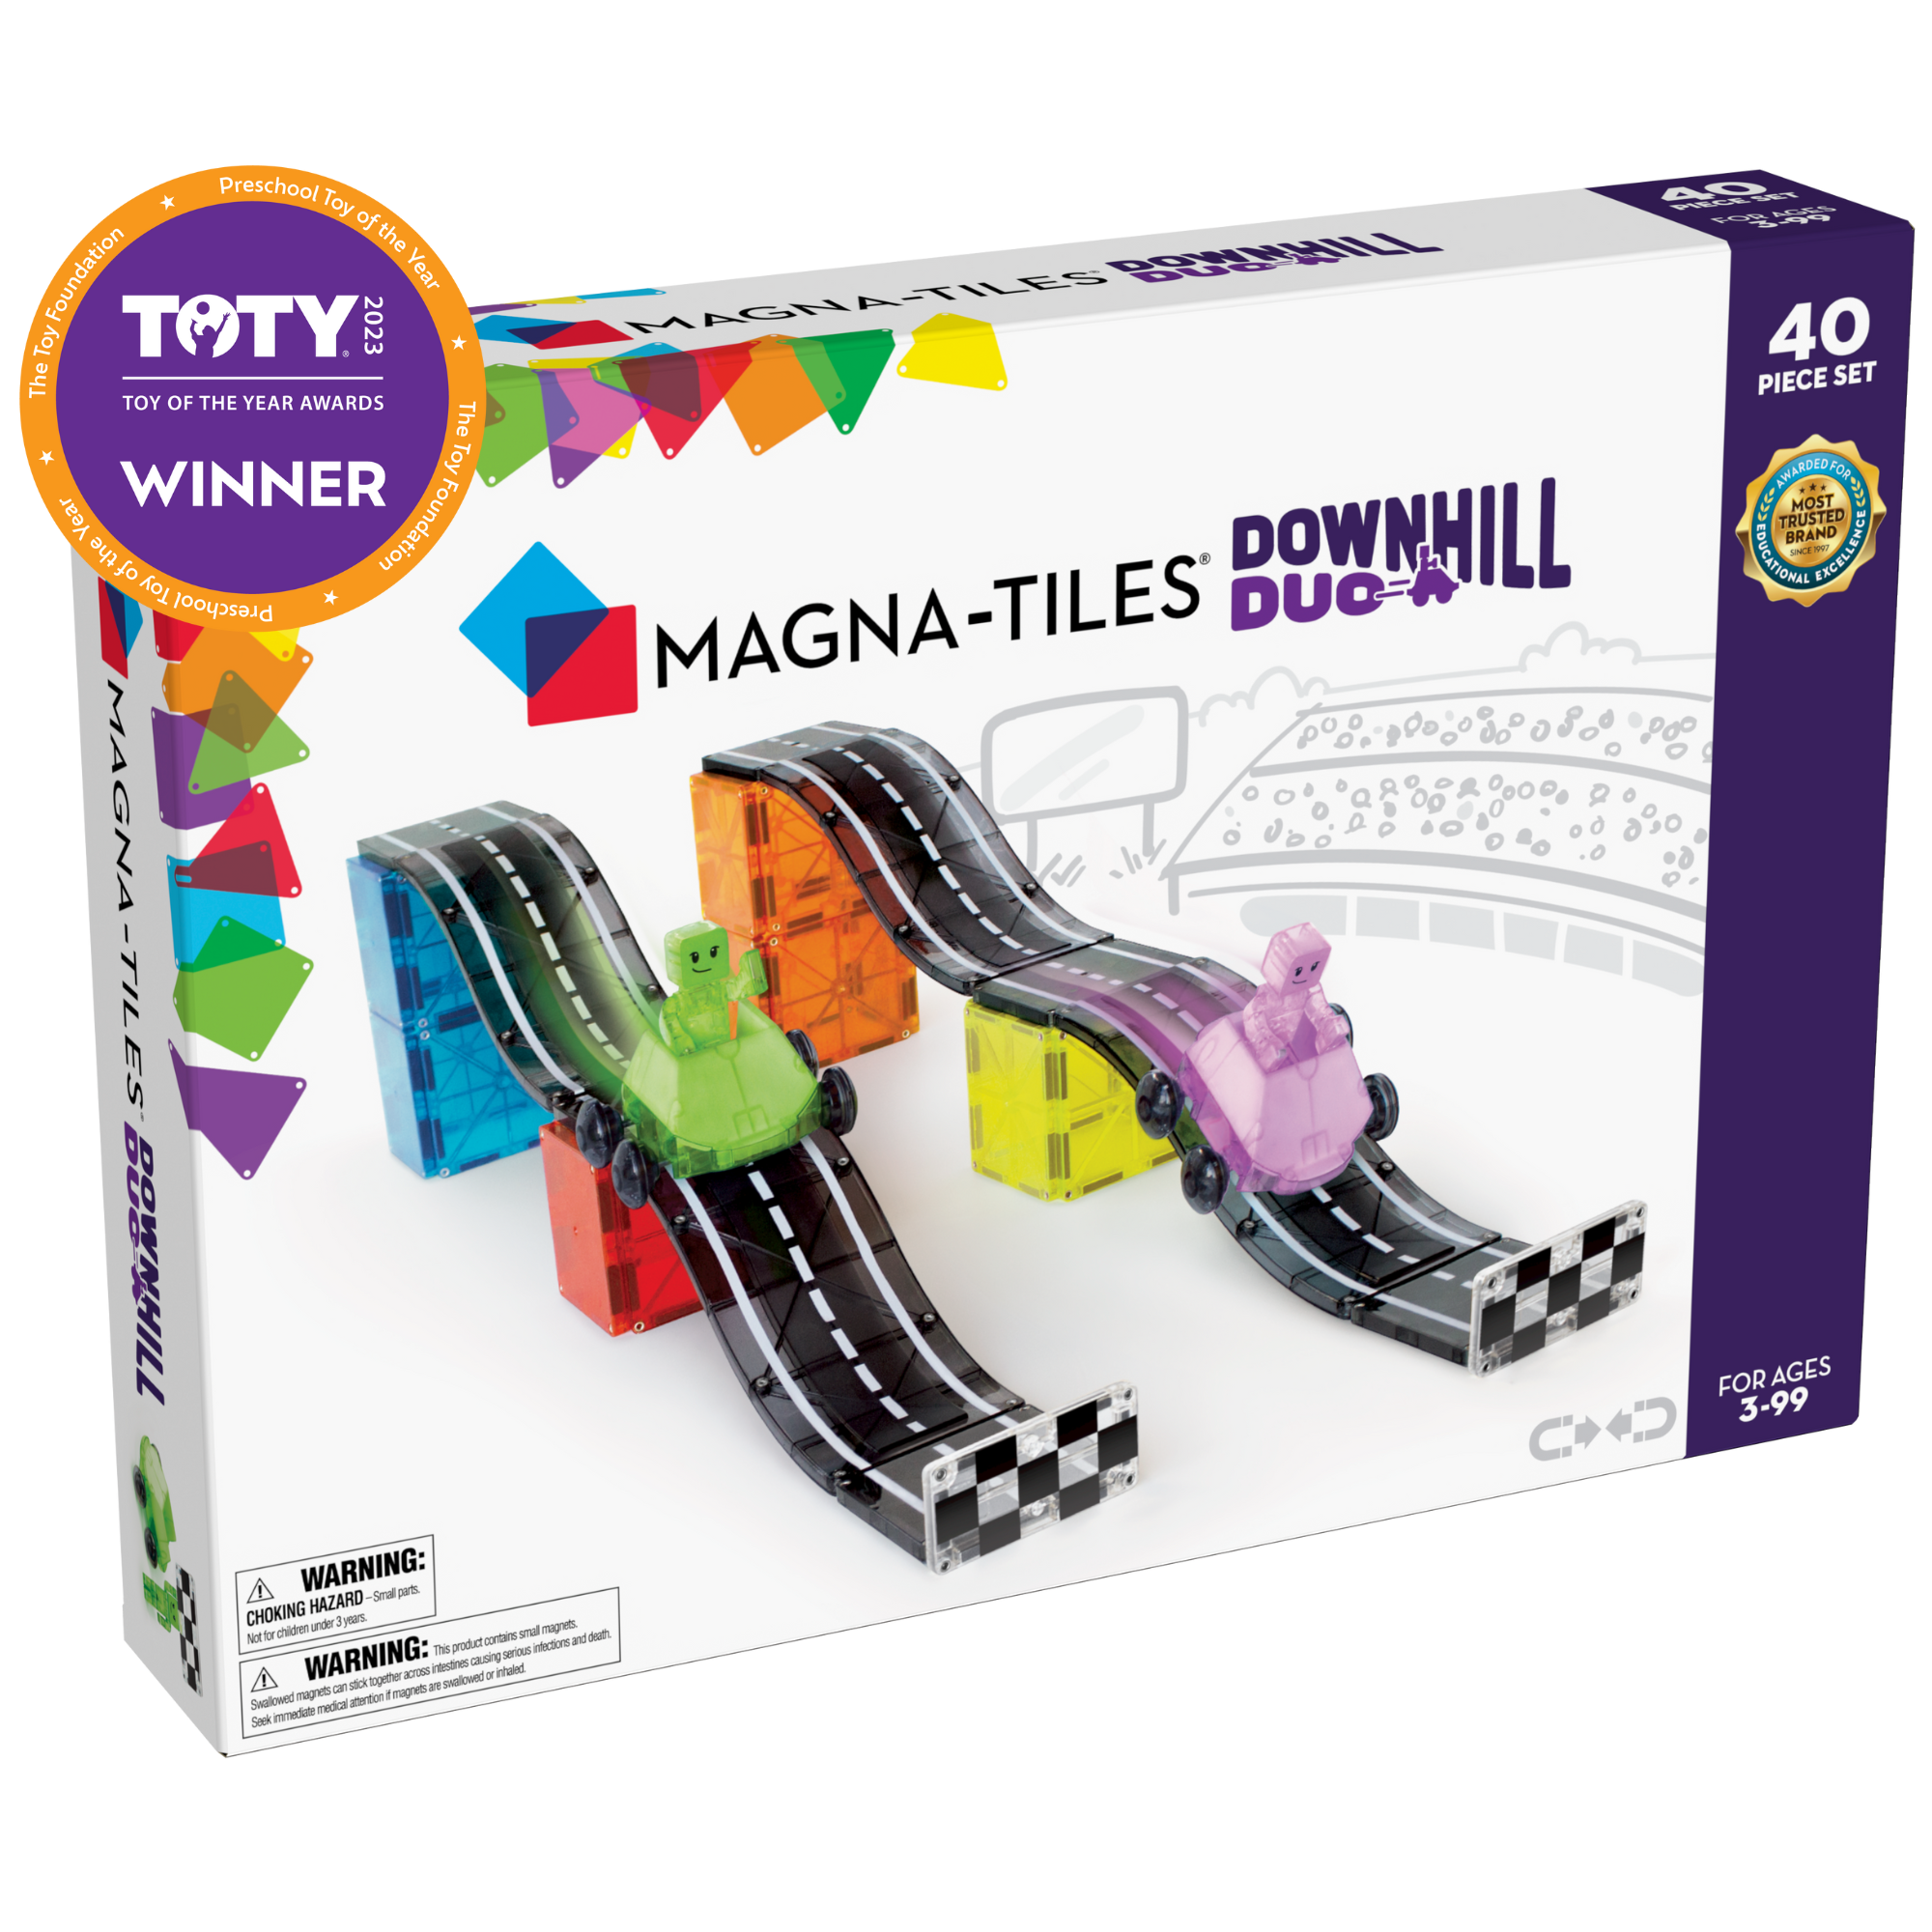 Downhill Duo 40-Piece Set - MAGNA-TILES®